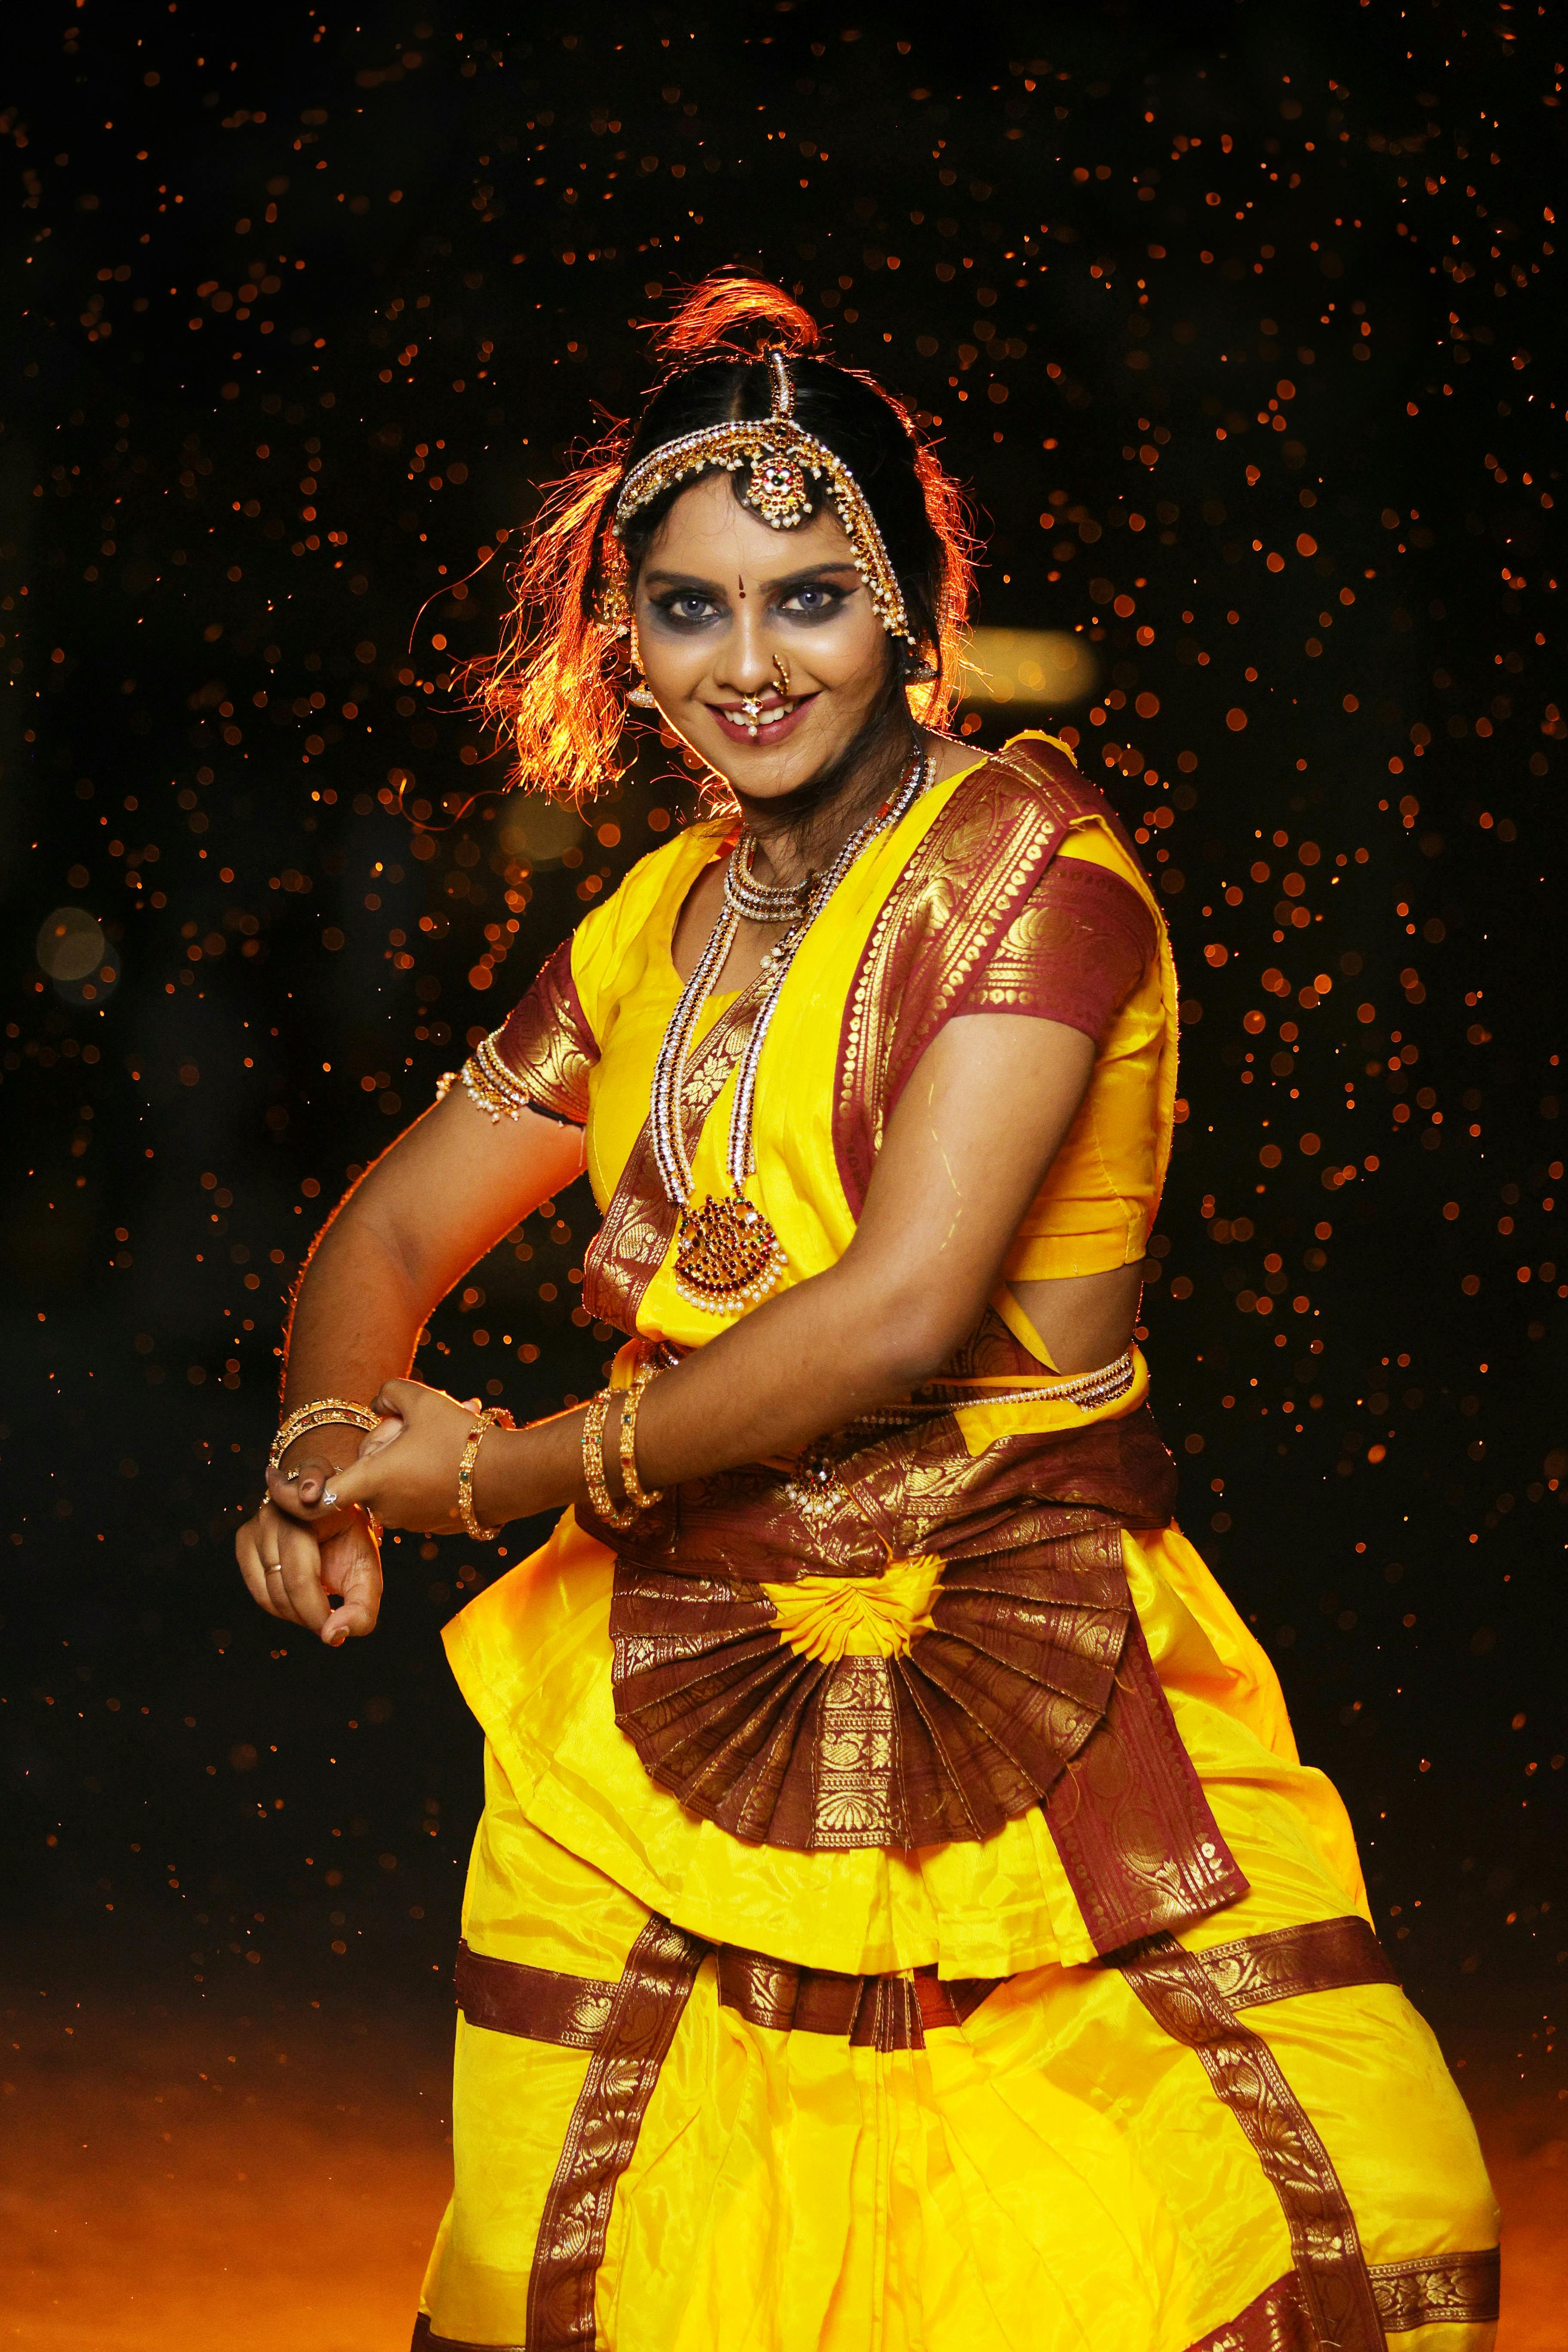 Priya Kushwaha